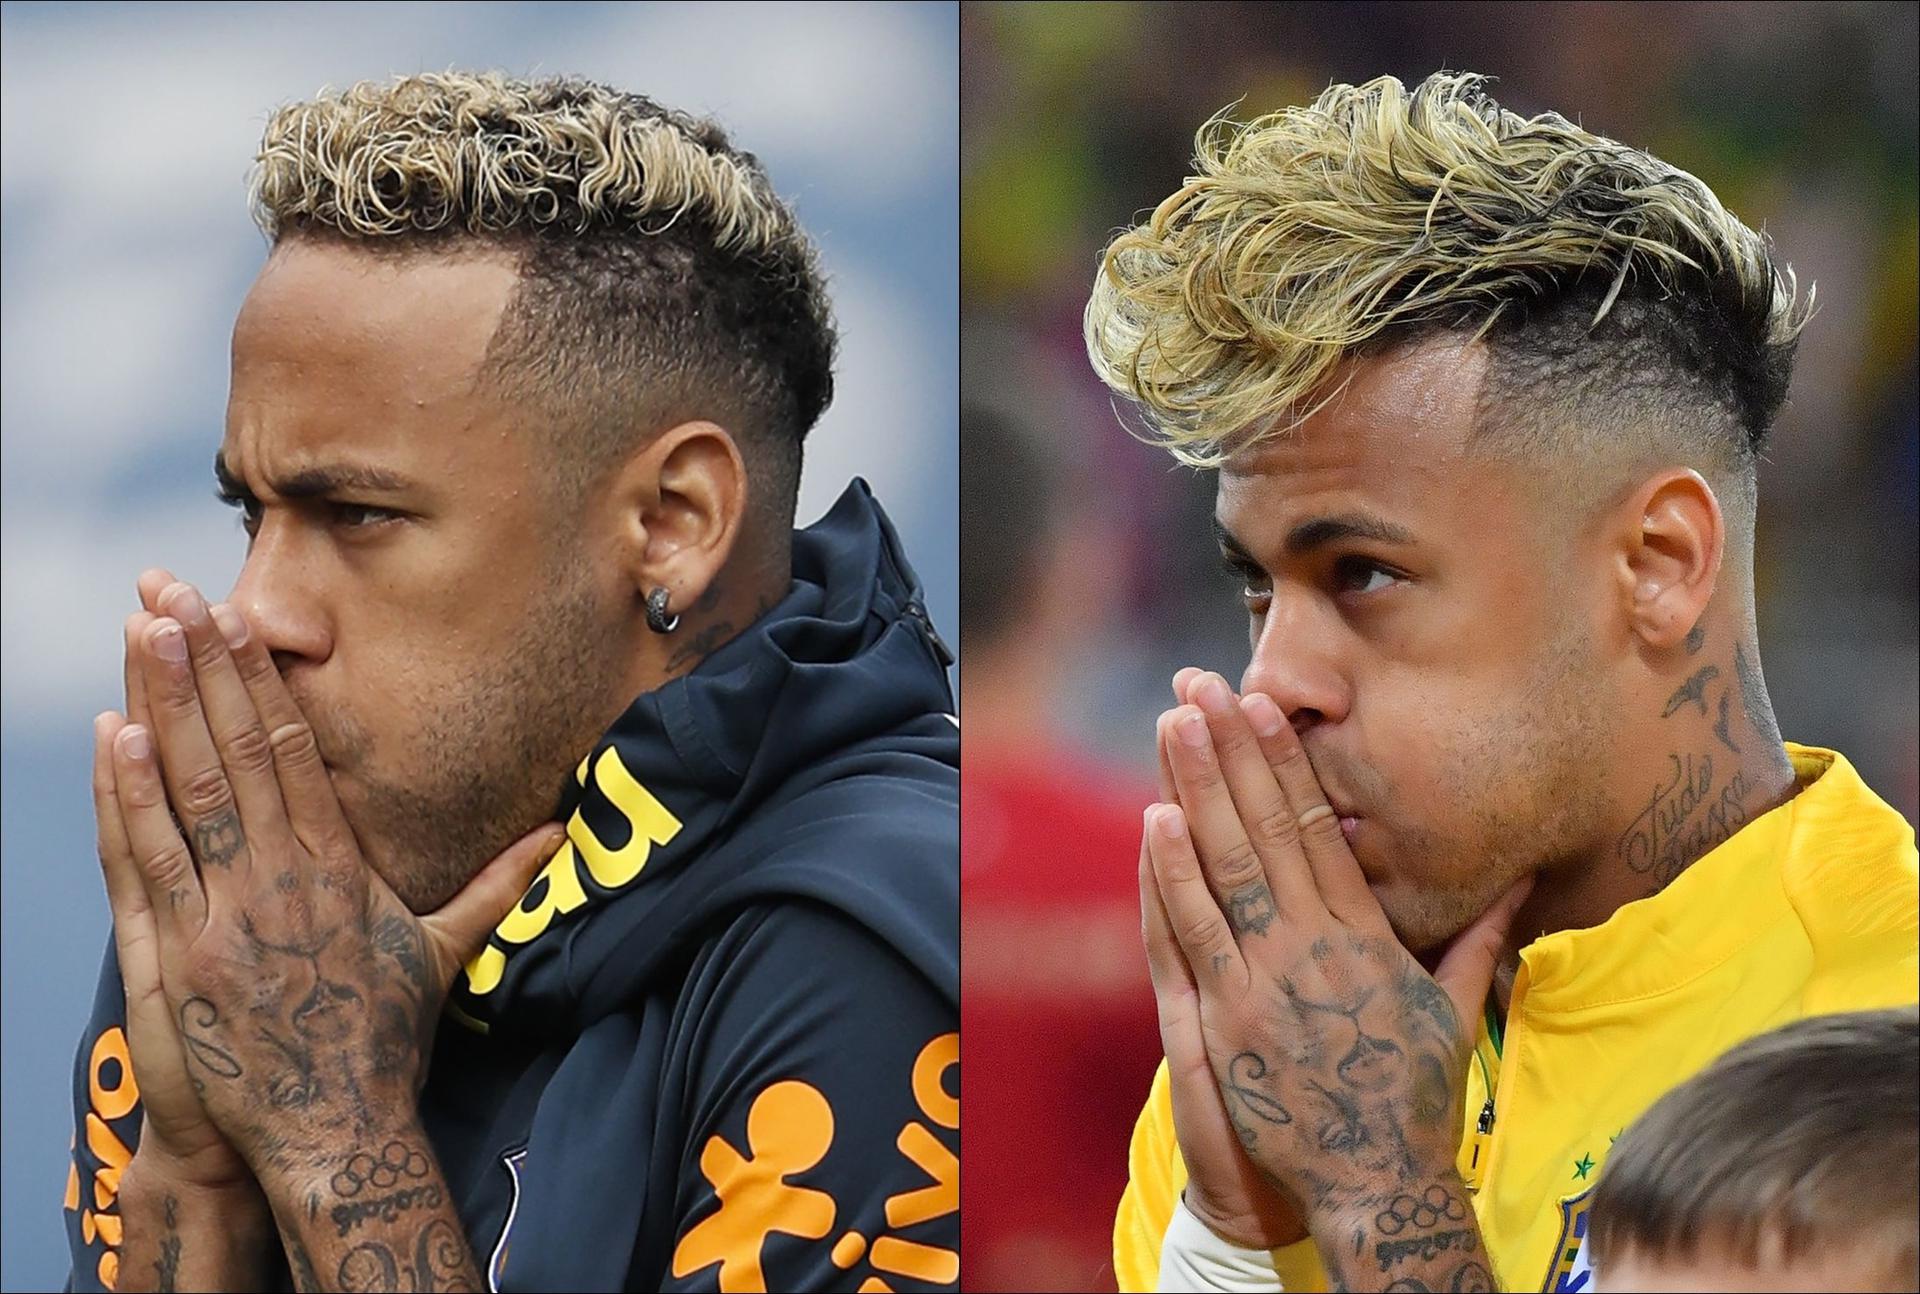 Neymar Fryzura piłkarza żyje własnym życiem. Neymar znów ściął włosy